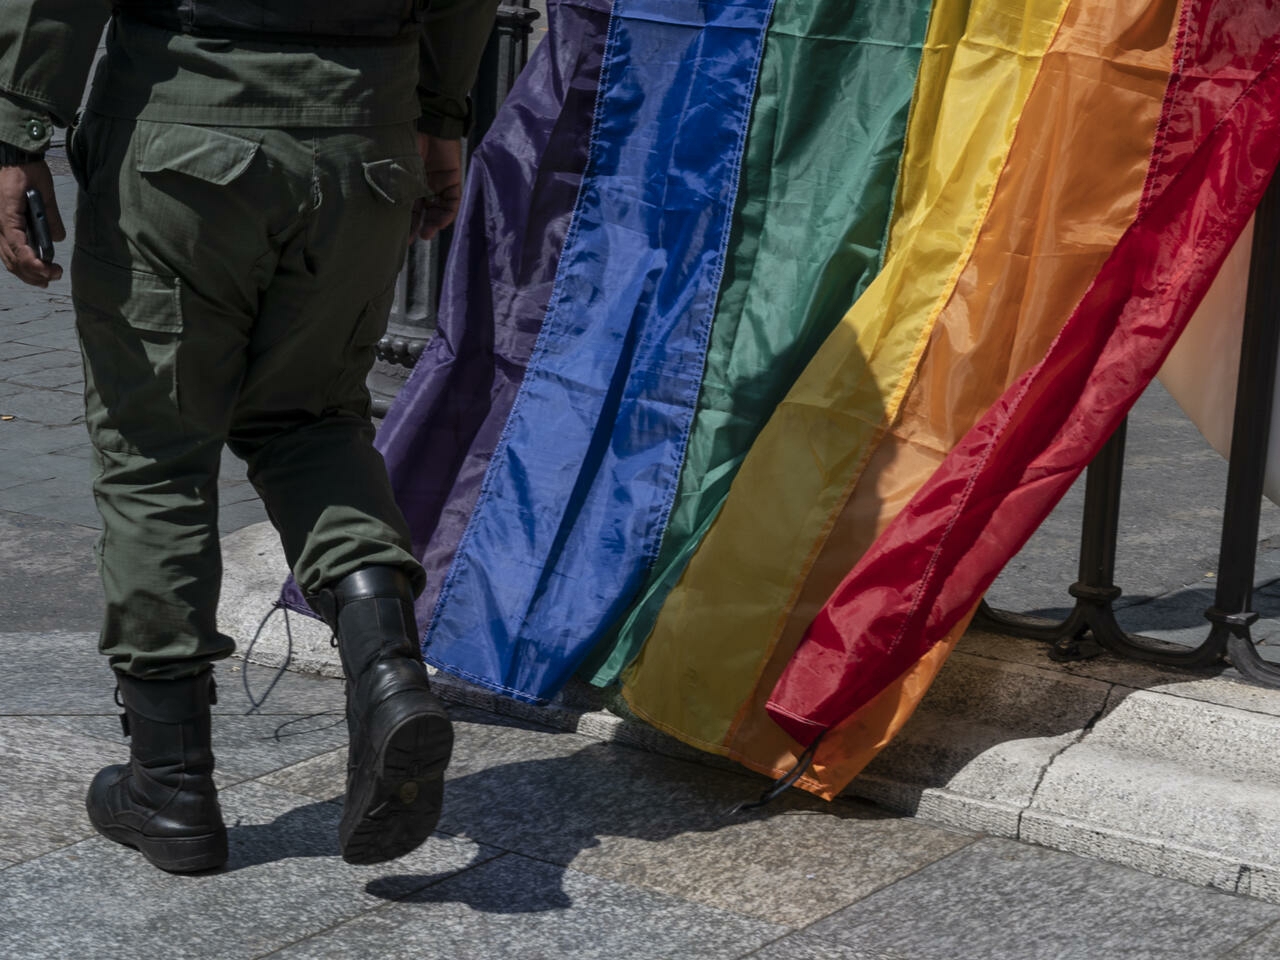 Στρατιωτική Δικαιοσύνη: «Χειρότερο να είσαι ομοφυλόφιλος παρά διεφθαρμένος» στον στρατό της Βενεζουέλας